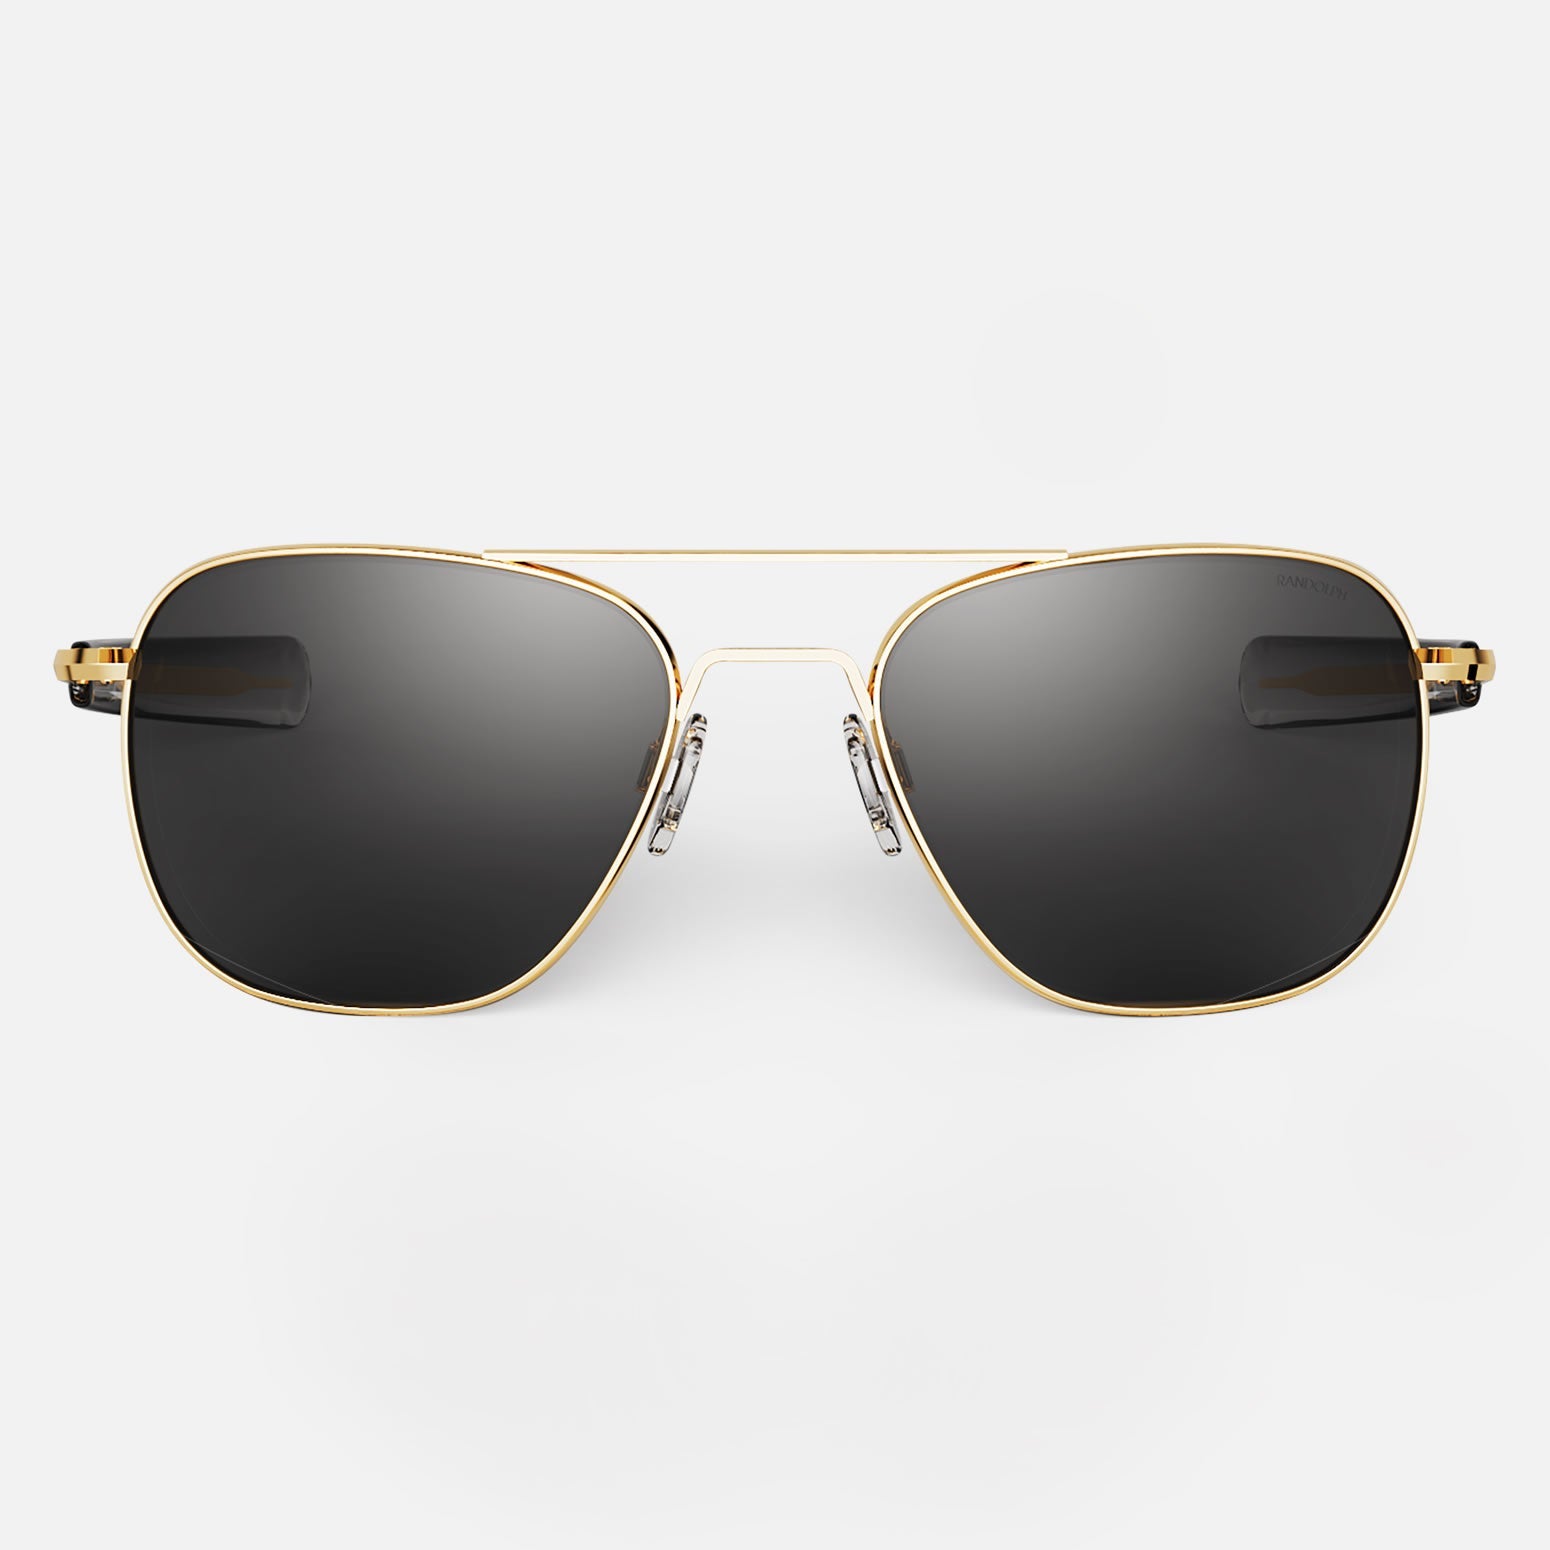 1 Pilot Polarized Sunglasses Fashion Yellow Lens Night Driving Glasses Men  Women 